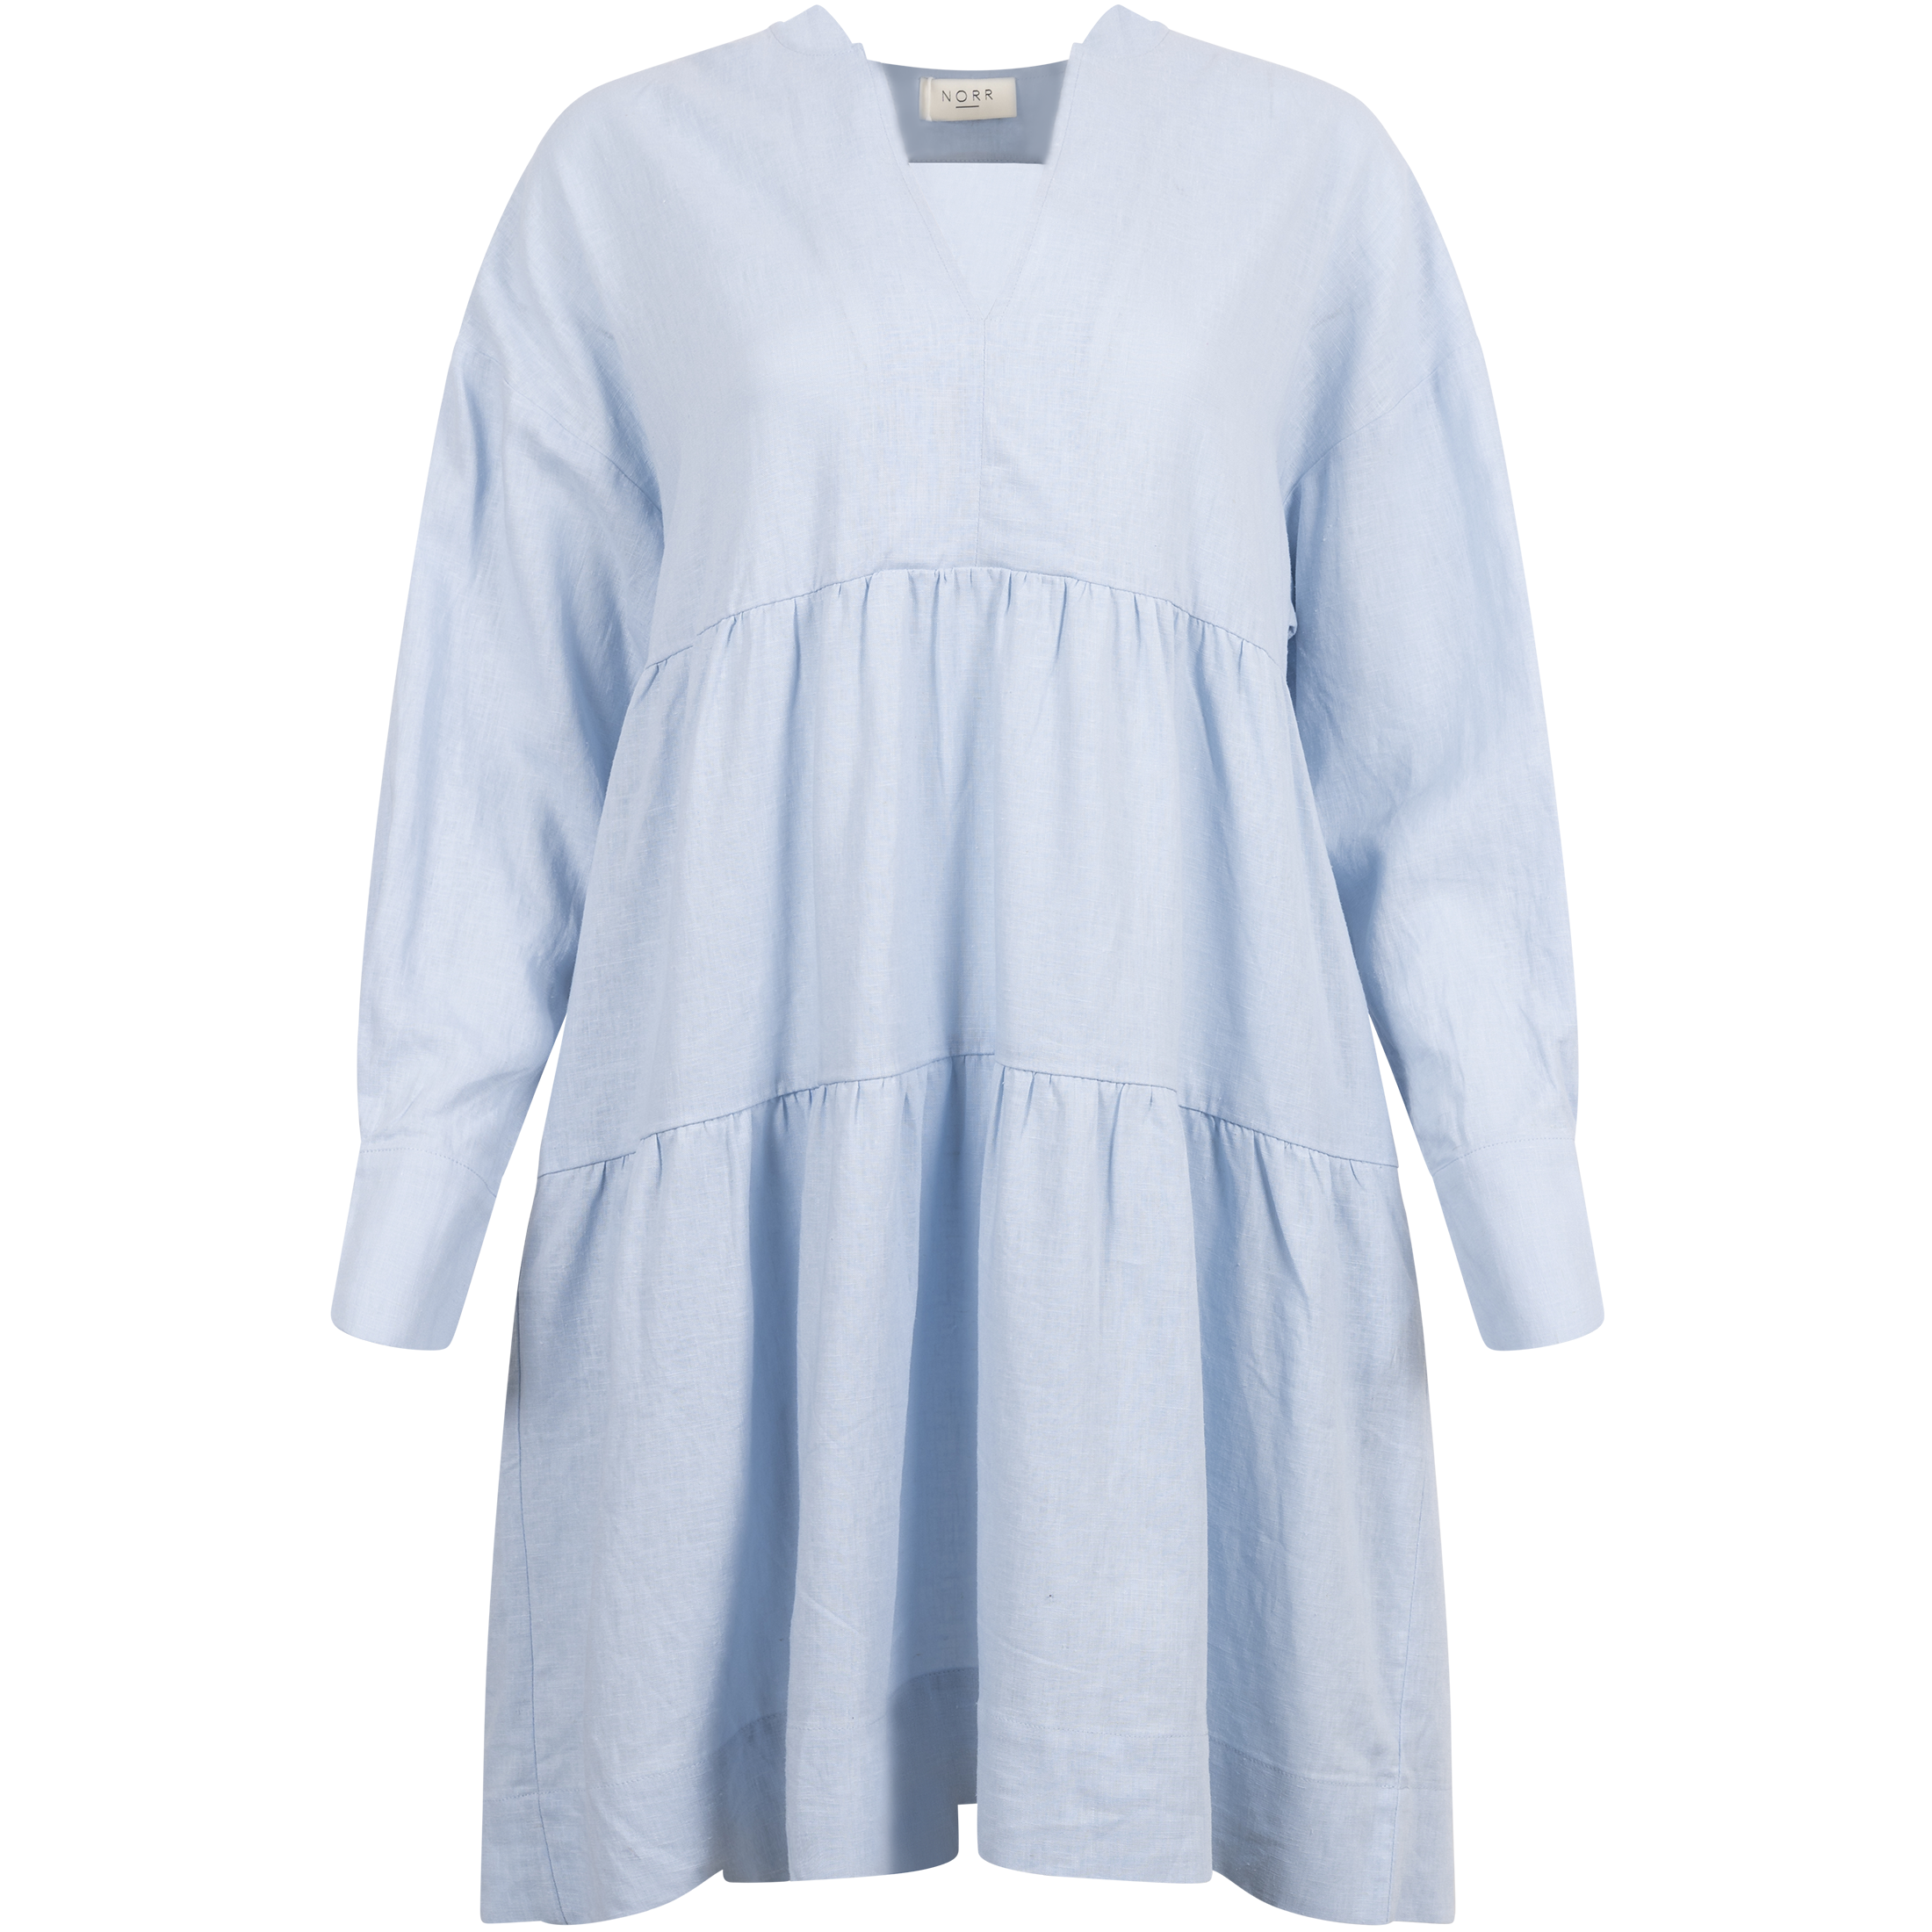 Esma Bomba Short Dress - Light Blue